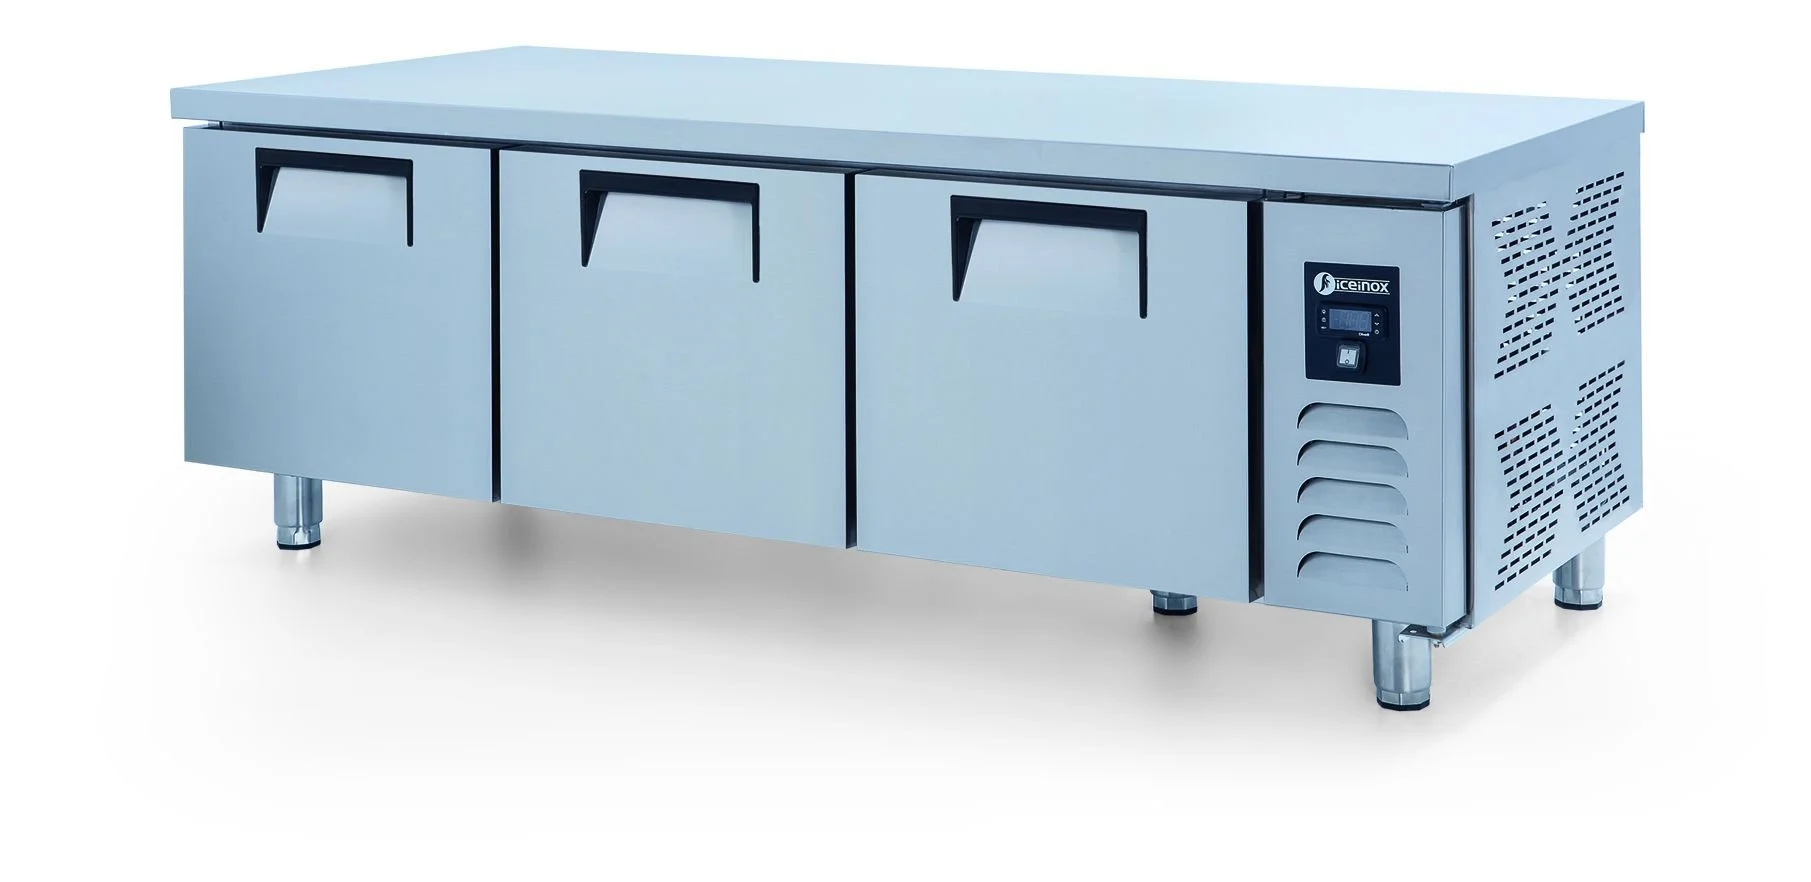 ICEINOX - Iceinox UTN 280 CR Kısa Model Pişirici Altı Buzdolabı, 3 Kapılı, 280 L